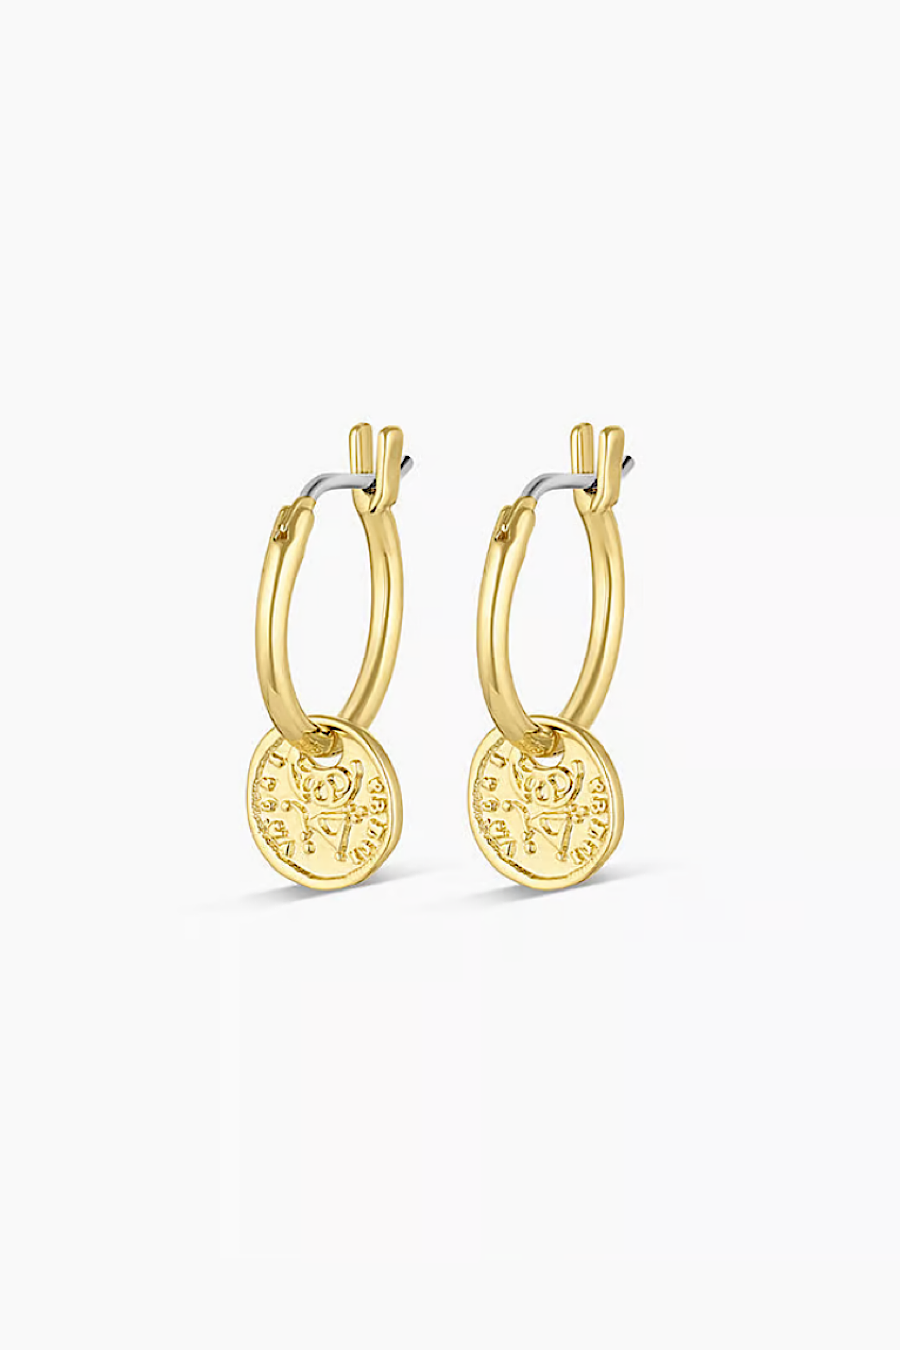 Gorjana Ana Coin Huggies Earrings Gold